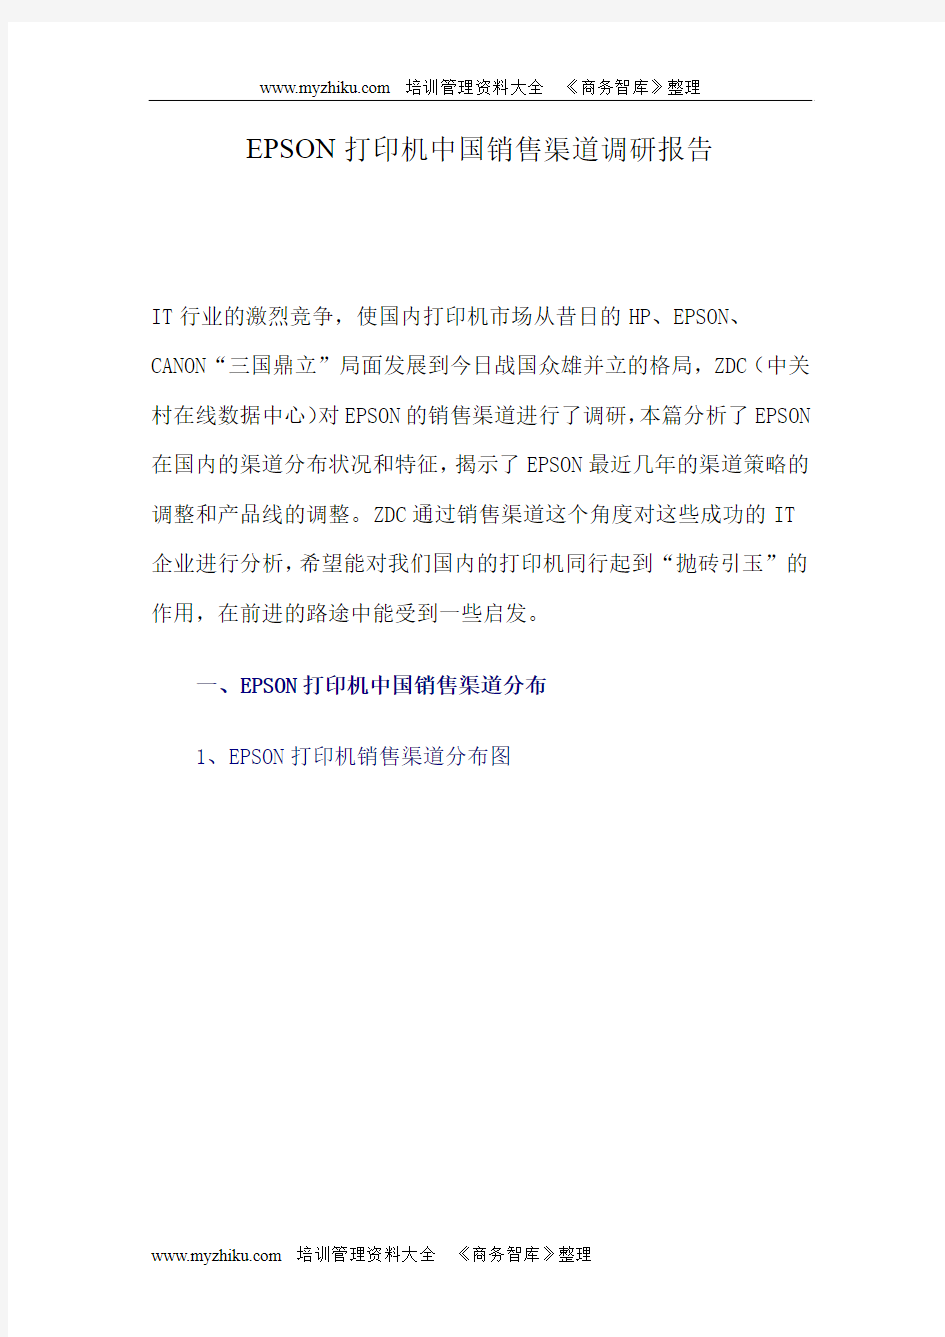 EPSON打印机中国销售渠道调研报告